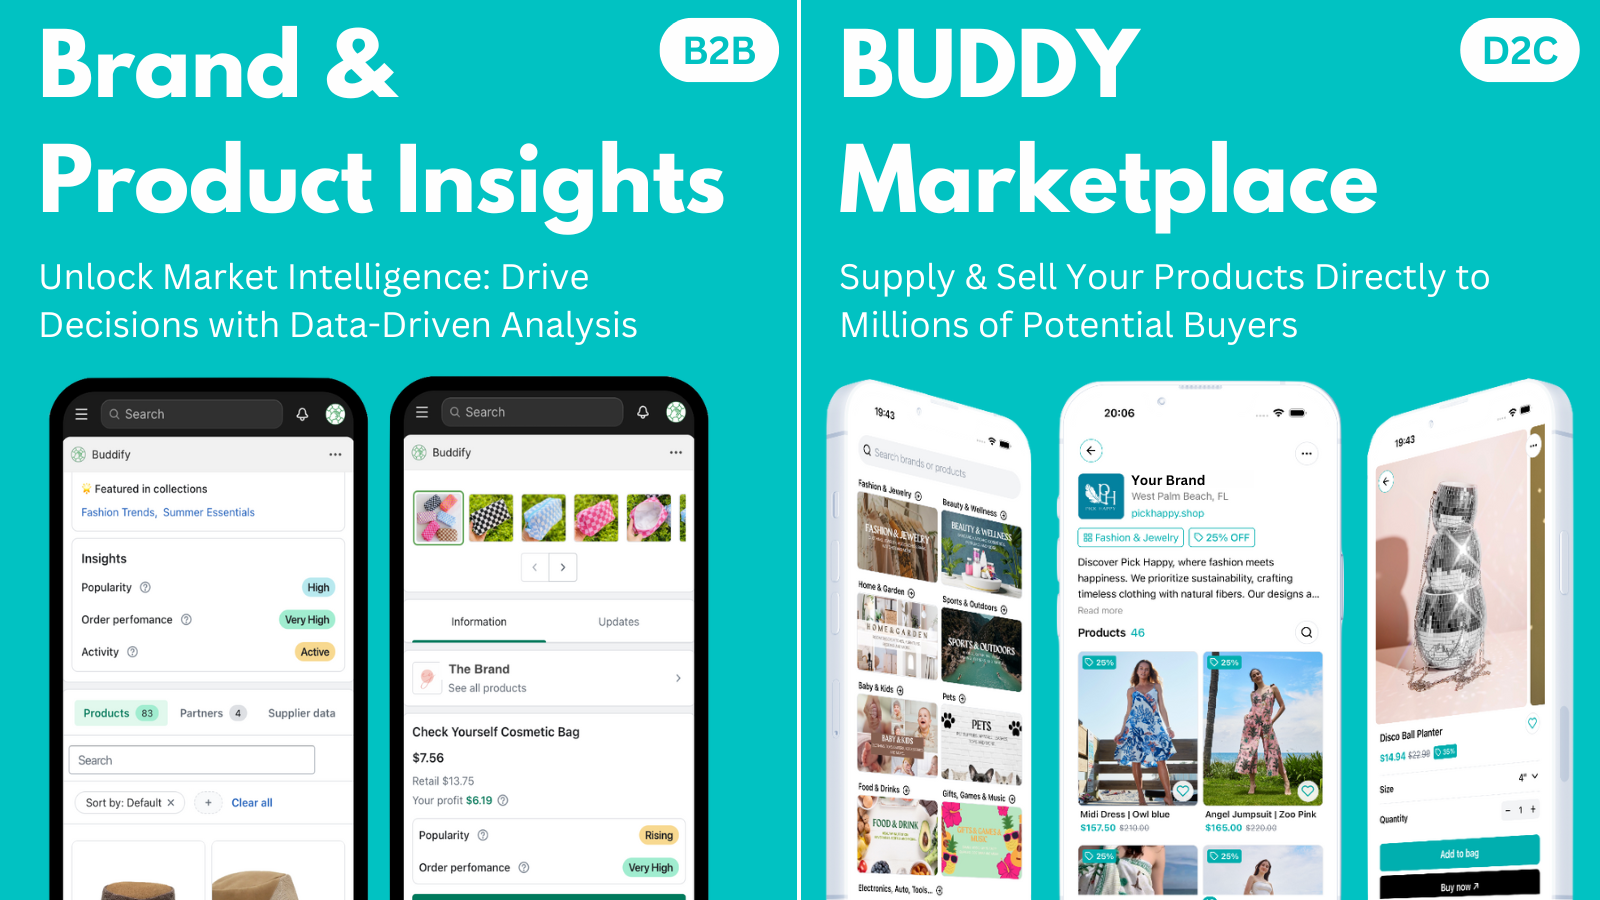 Marken- & Produkt-Einblicke und BUDDY-Marktplatz